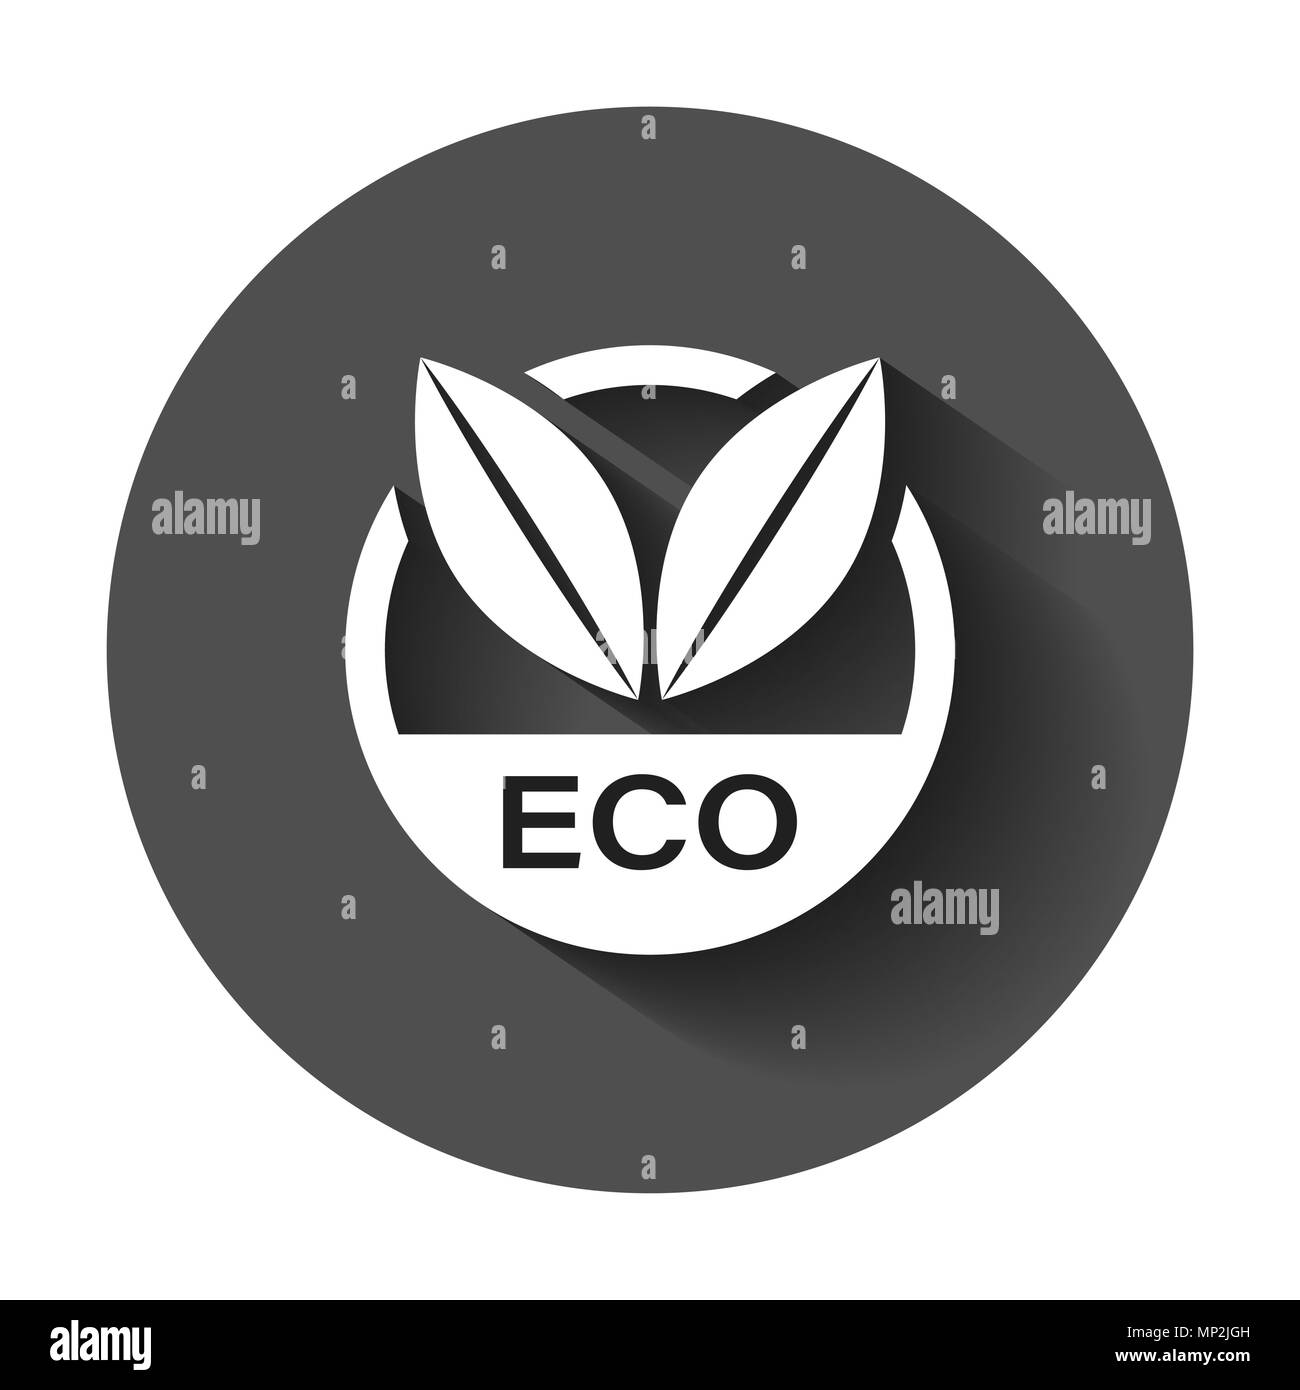 Il marchio eco badge icone vettoriali in stile appartamento. Prodotto organico timbro illustrazione con lunga ombra. Eco alimenti naturali nozione. Illustrazione Vettoriale